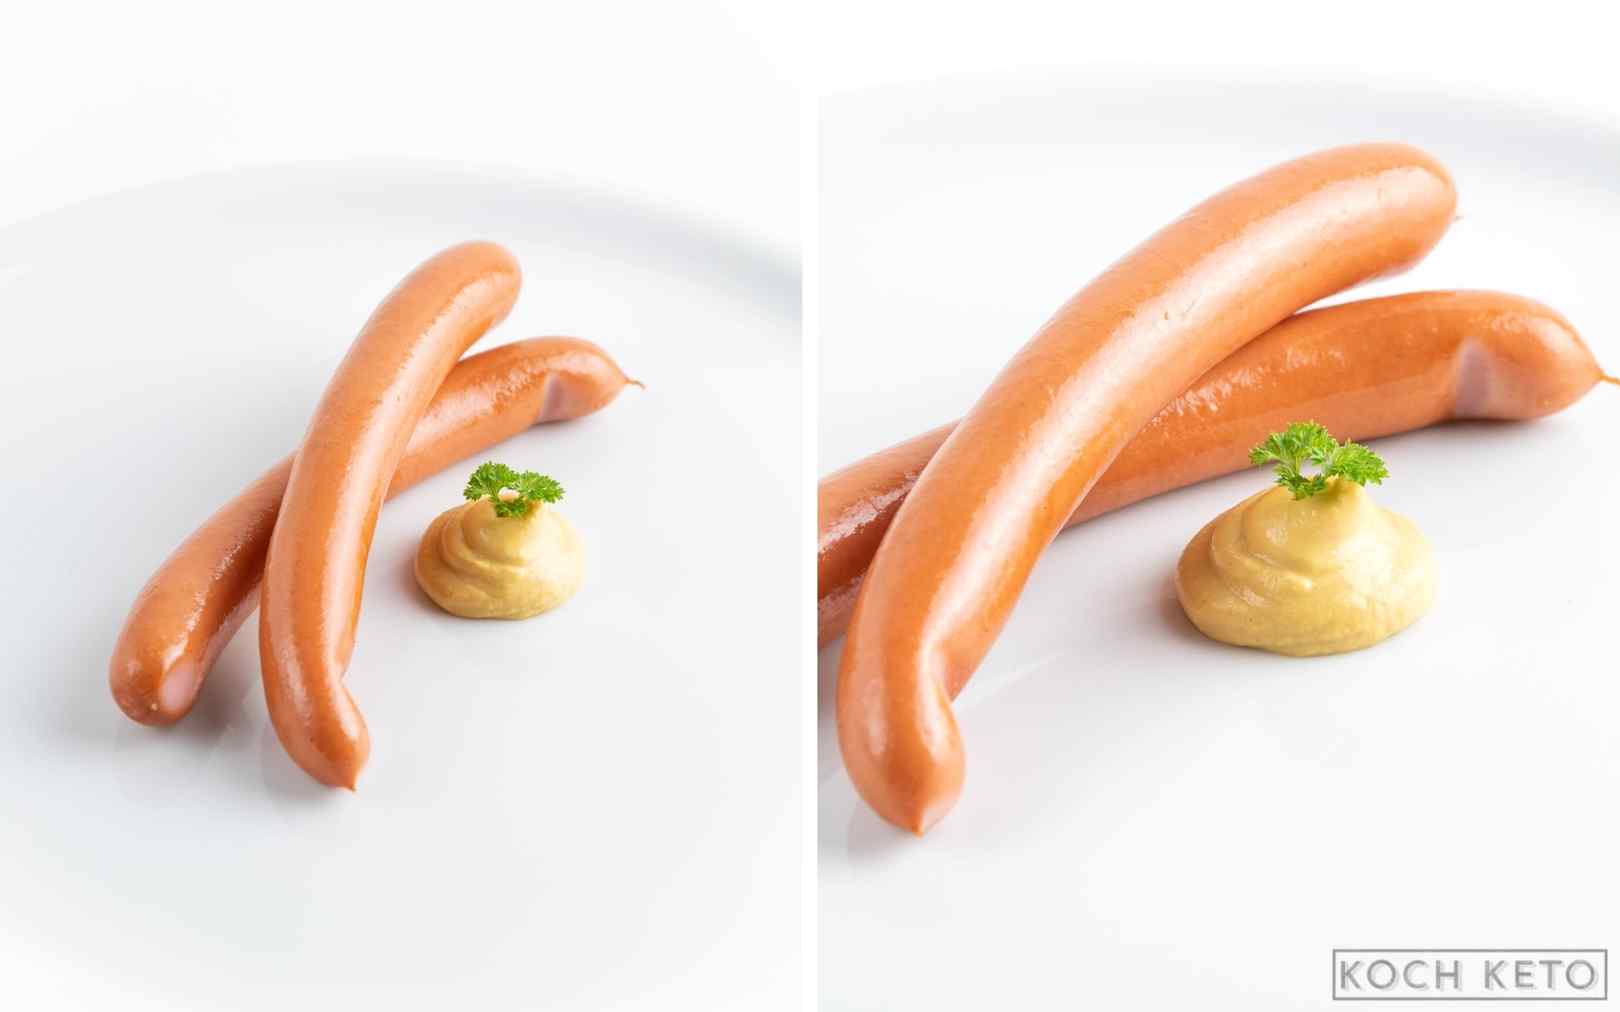 Schneller Low Carb Snack: Wiener Würstchen mit Senf ohne Kohlenhydrate Desktop Featured Image